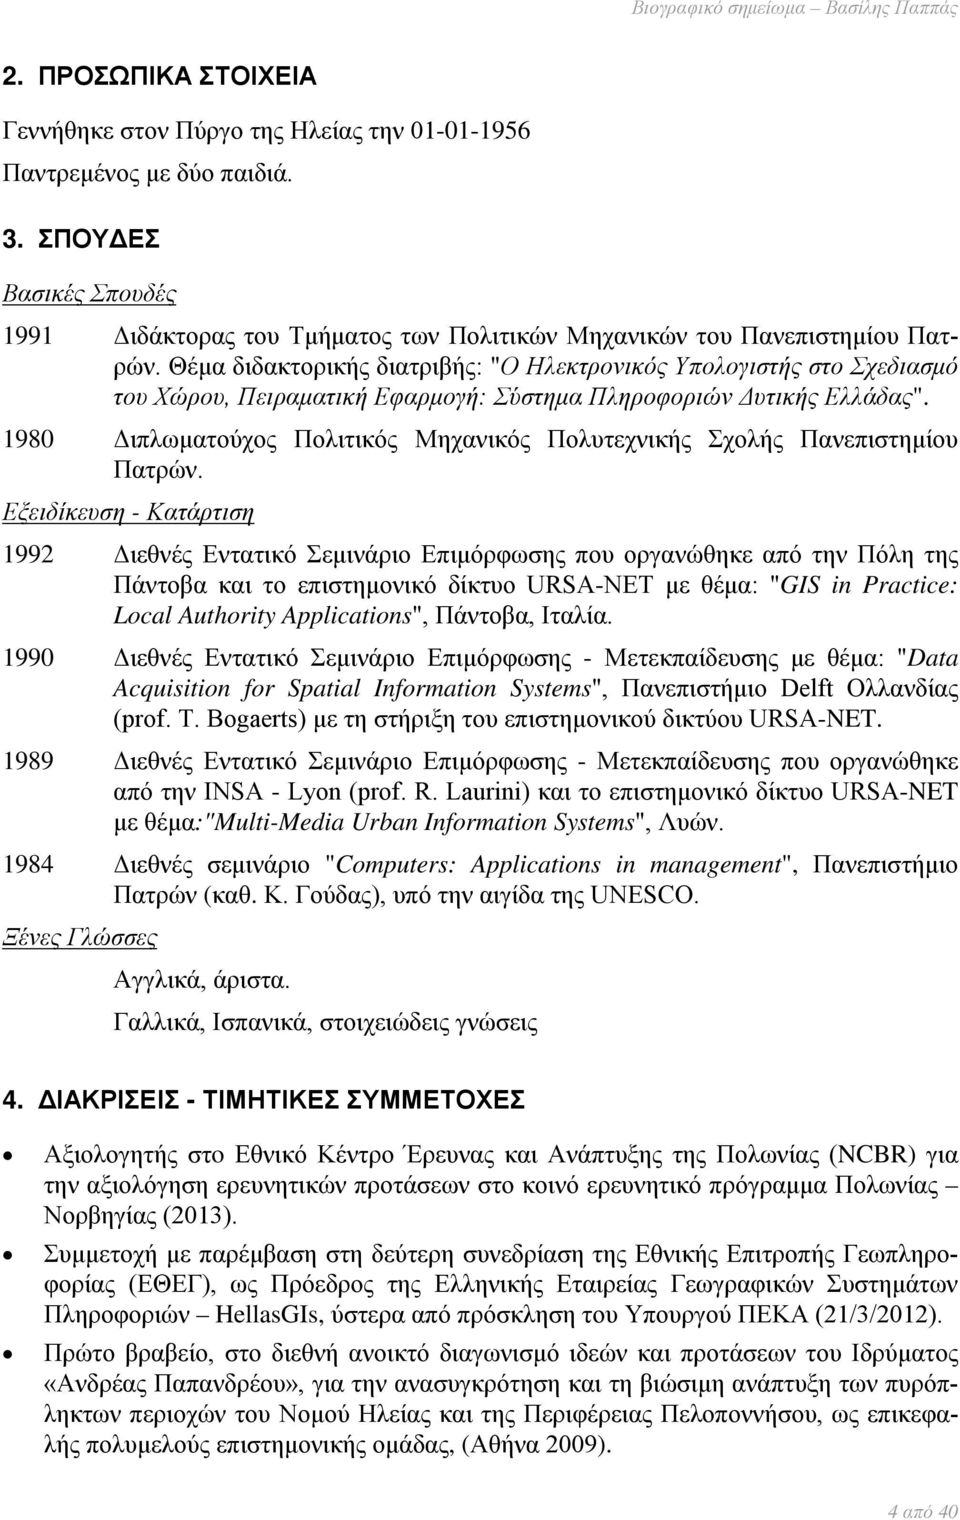 Θέμα διδακτορικής διατριβής: "Ο Ηλεκτρονικός Υπολογιστής στο Σχεδιασμό του Χώρου, Πειραματική Εφαρμογή: Σύστημα Πληροφοριών Δυτικής Ελλάδας".